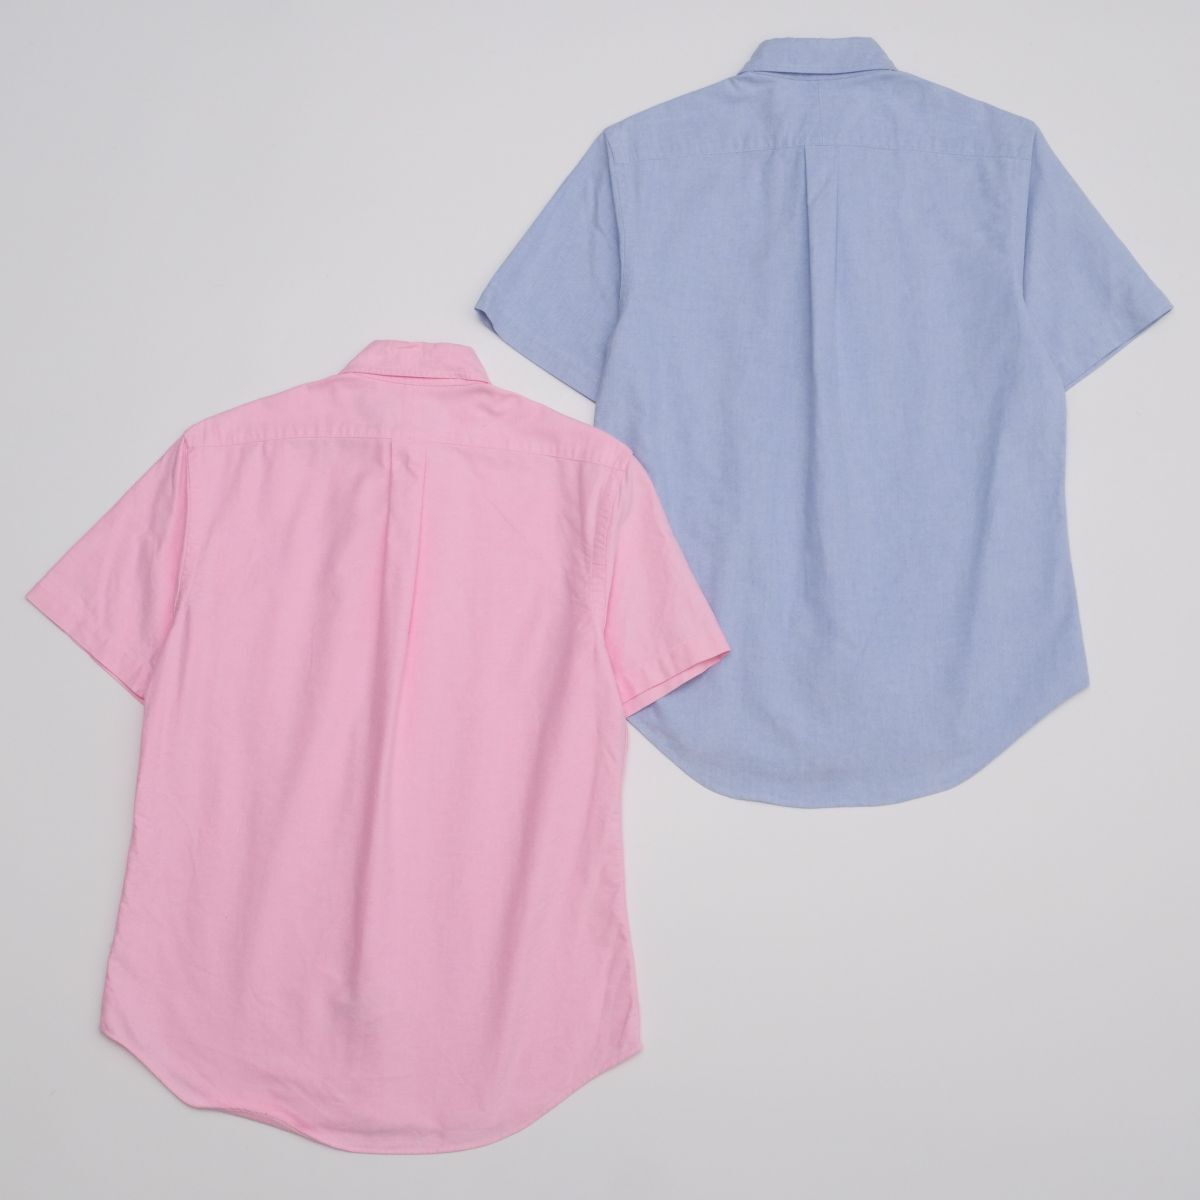 GO4366 Ralph Lauren 2 шт. комплект / оскфорд рубашка / короткий рукав / мужской S/ хлопок / розовый серия + оттенок голубого / кнопка down рубашка 